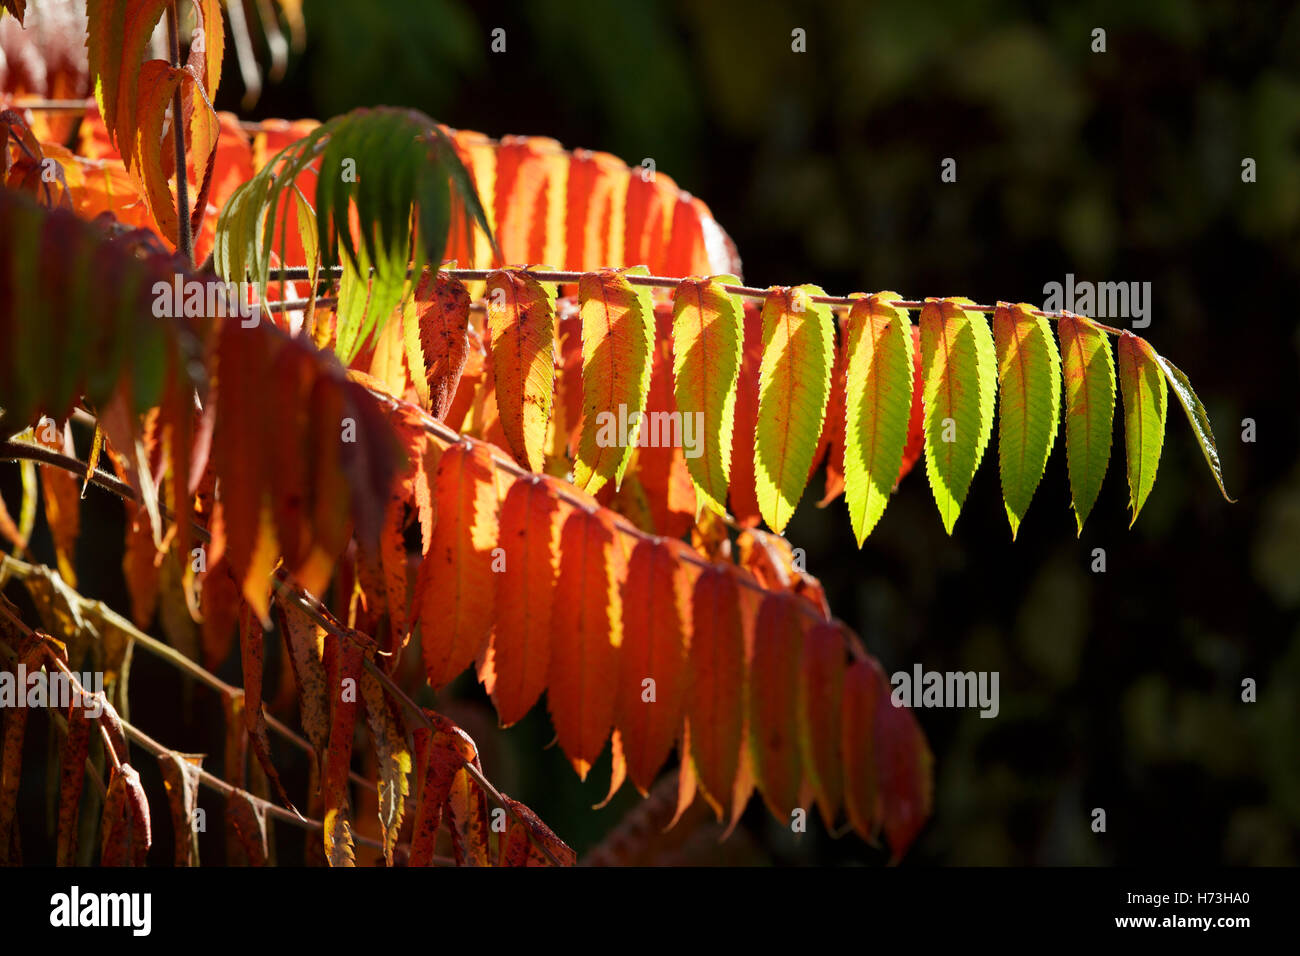 A sumac shrub in Worcestershire, UK Stock Photo